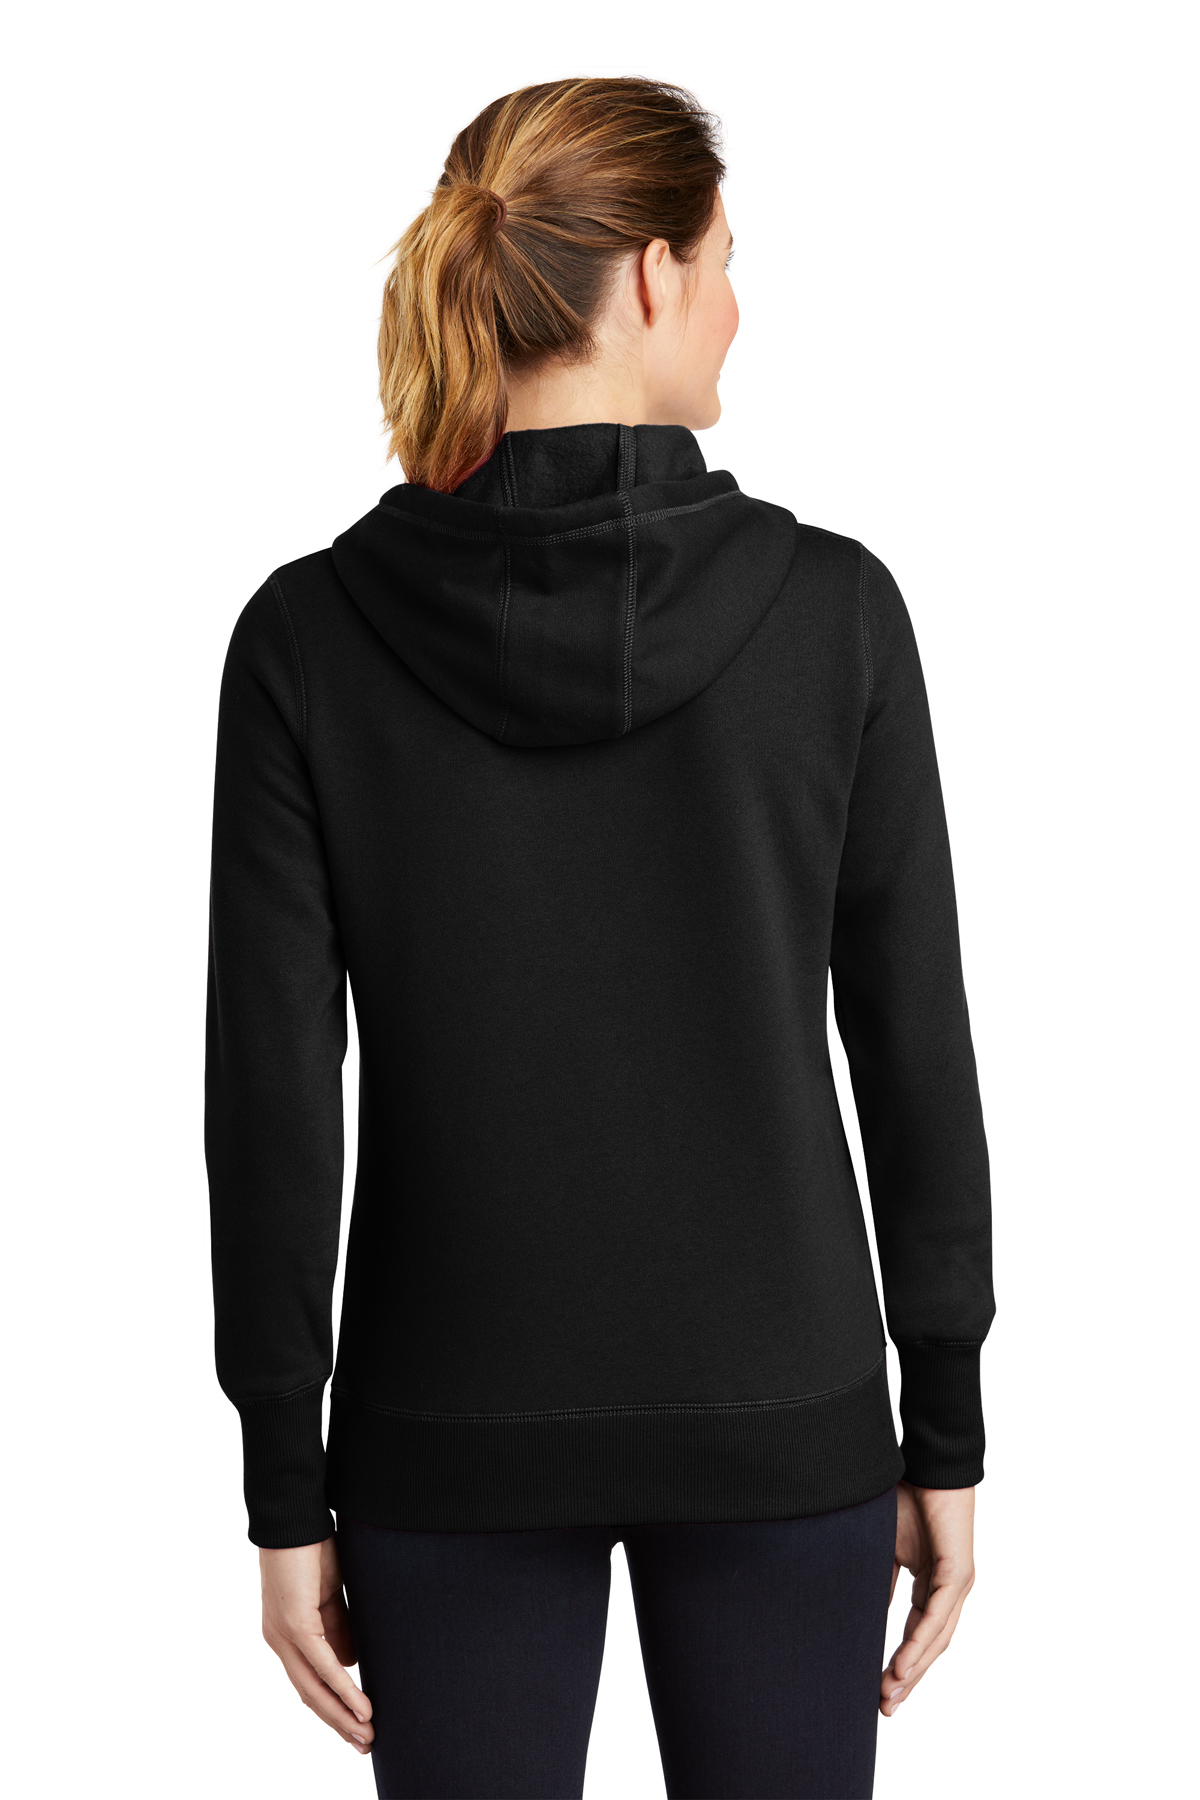 Sport-Tek Ladies Pullover Hooded Product | | Sweatshirt Sport-Tek